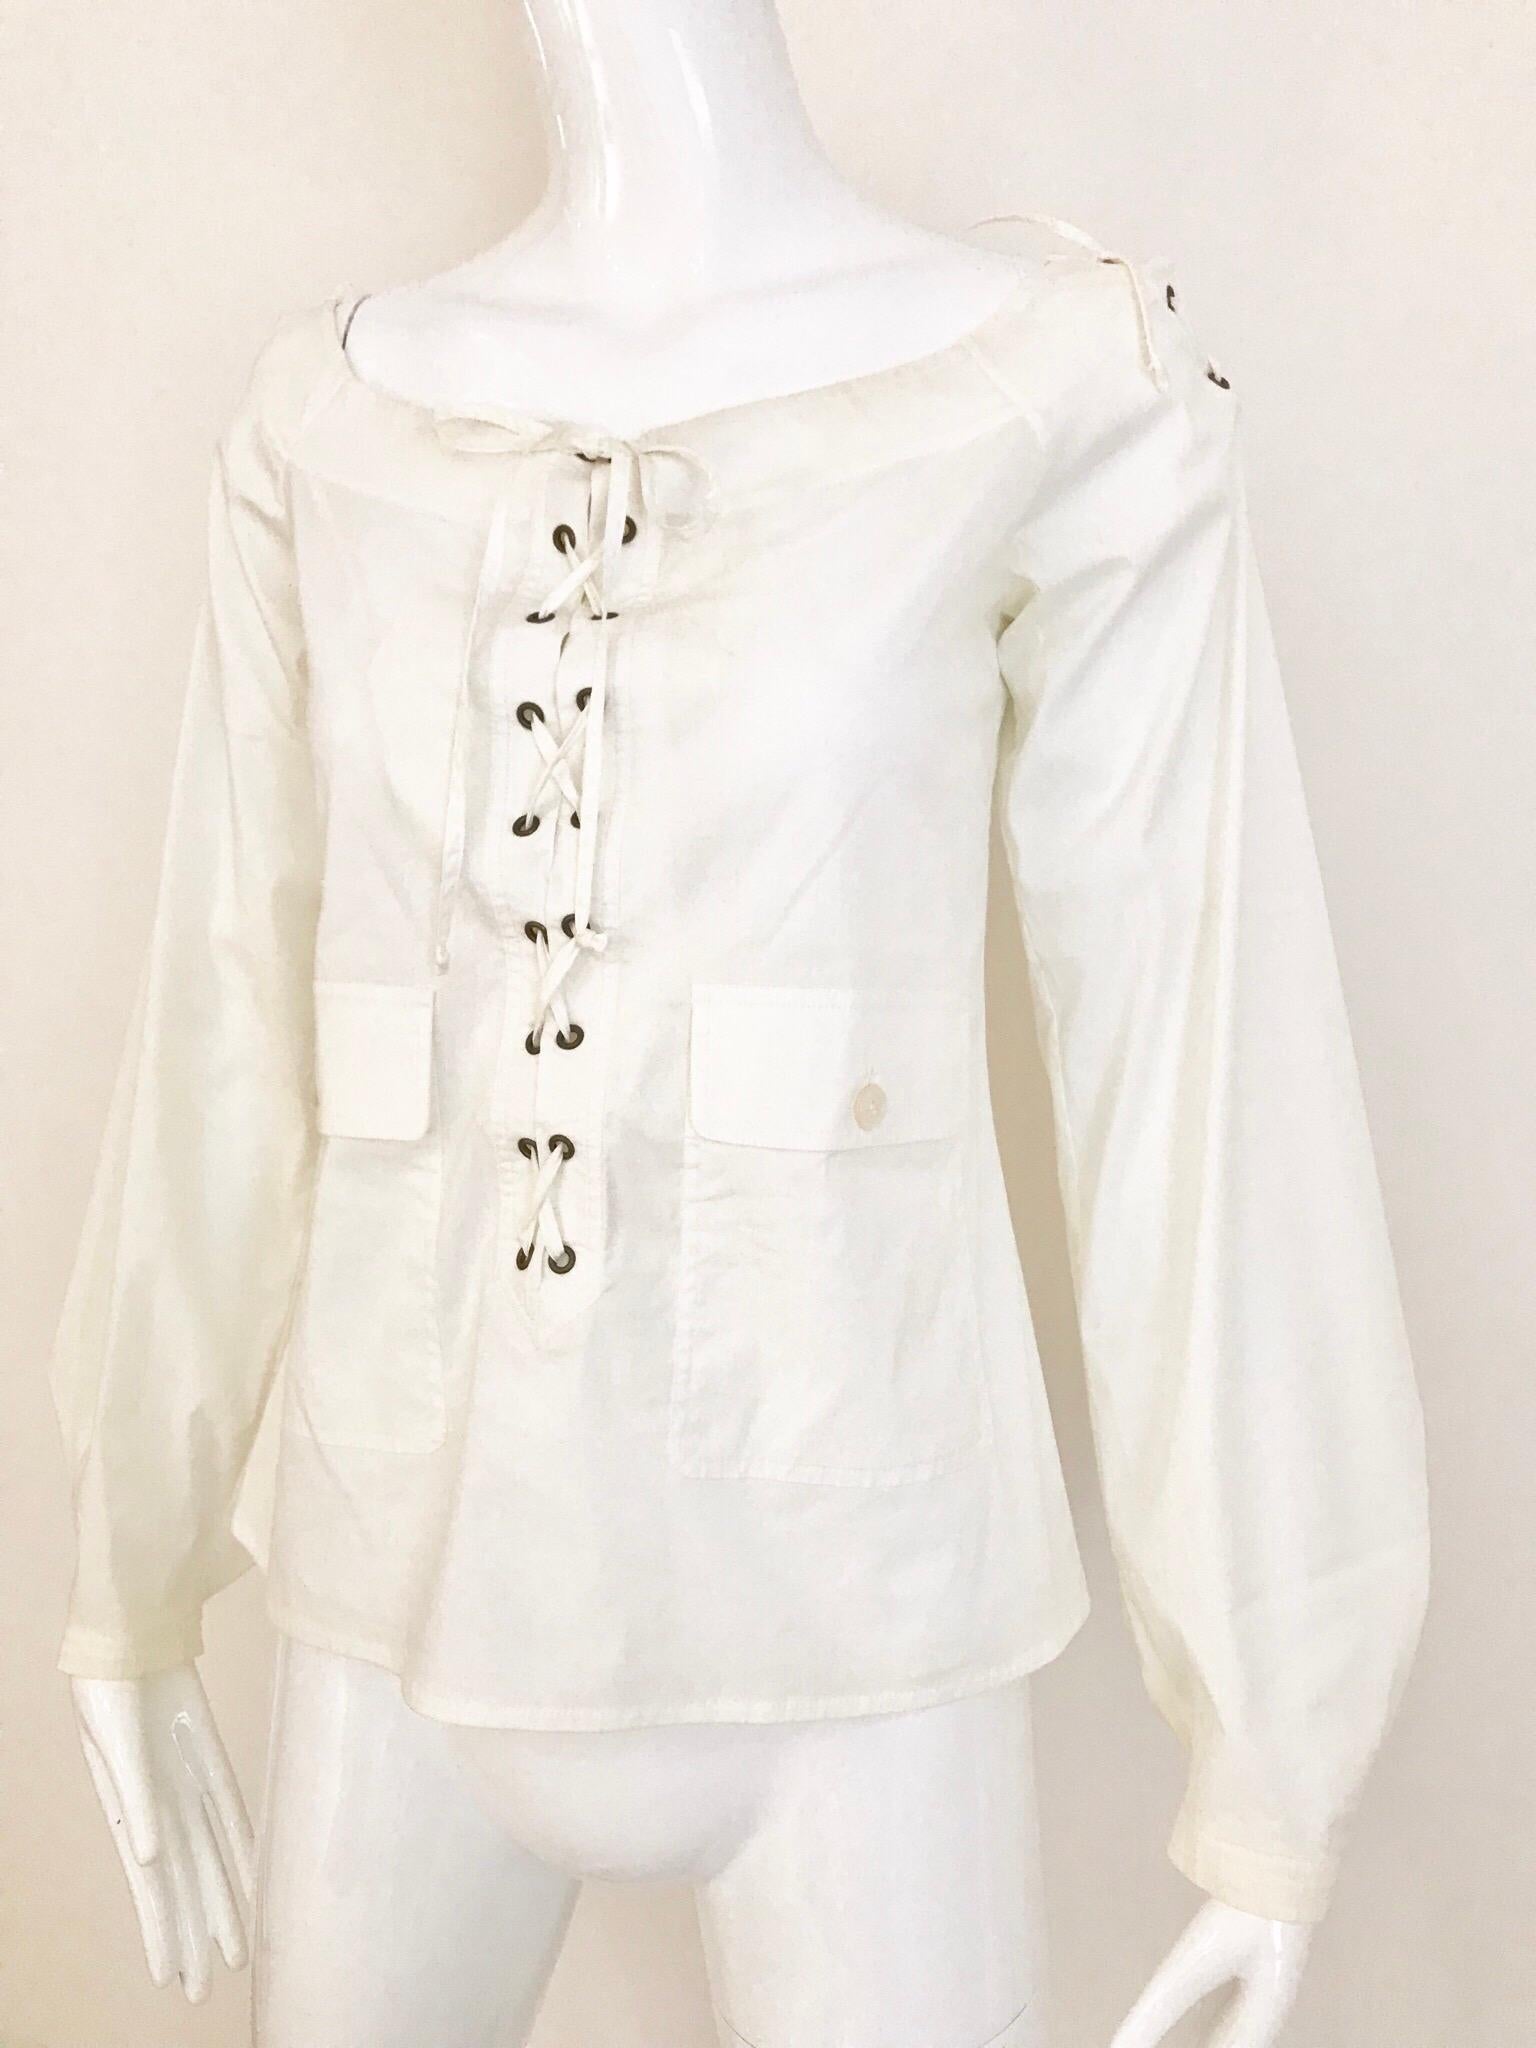 ysl white blouse